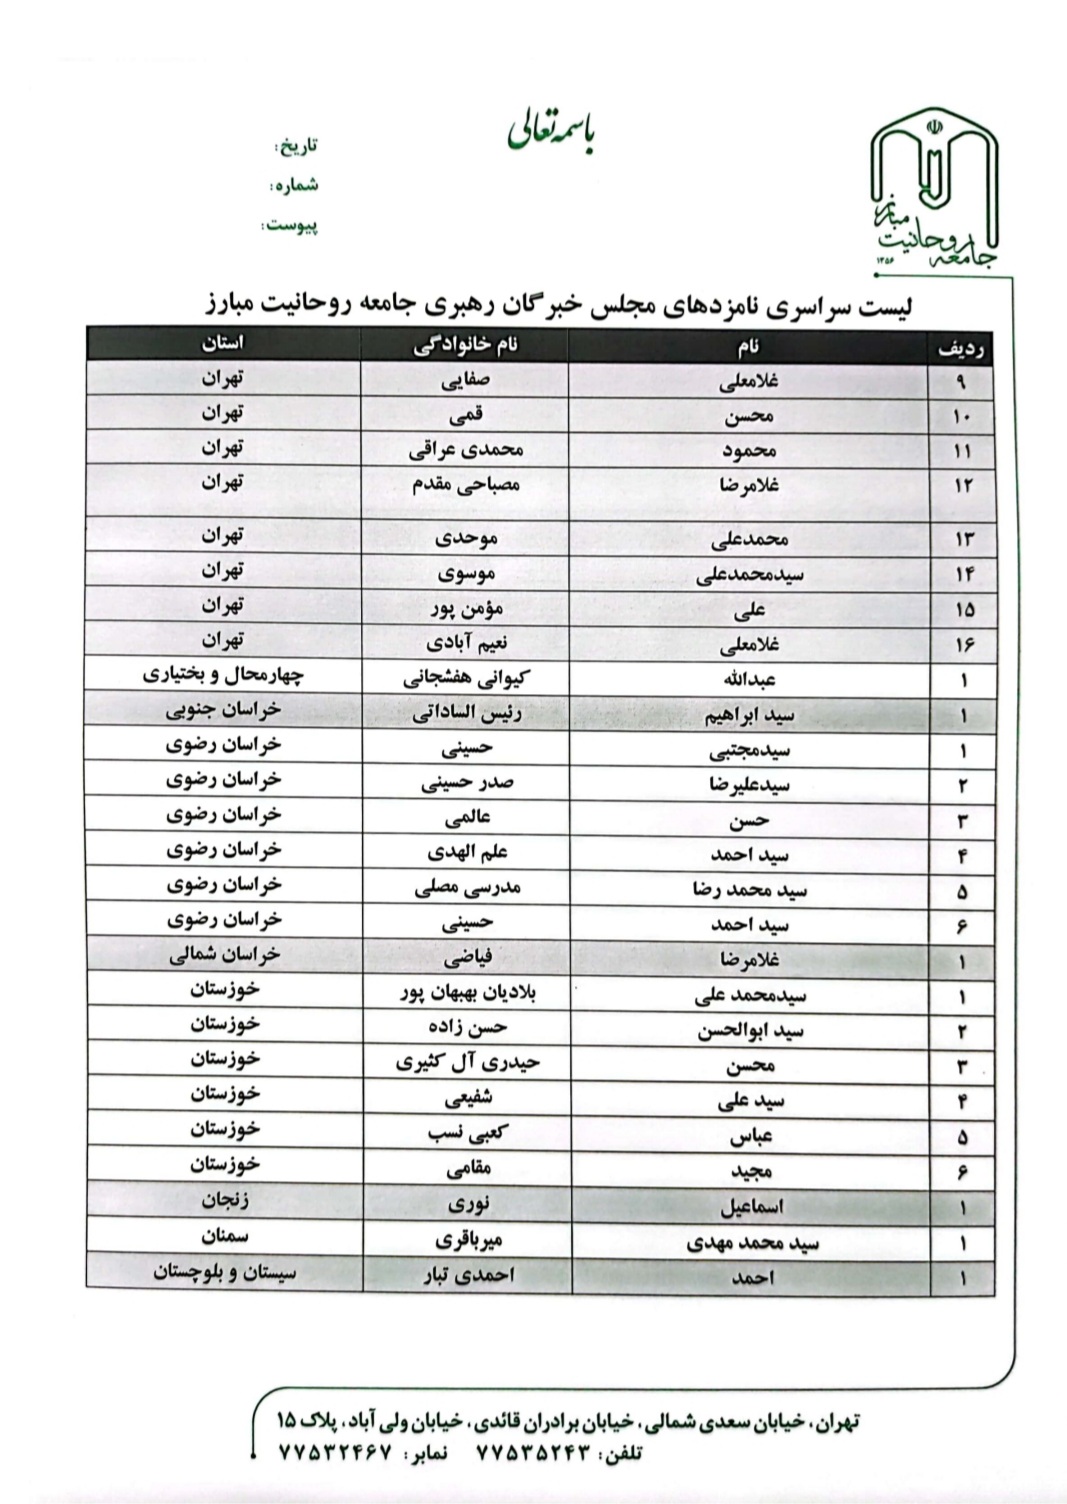 اعلام فهرست سراسری نامزدهای جامعه روحانیت مبارز در انتخابات مجلس خبرگان رهبری